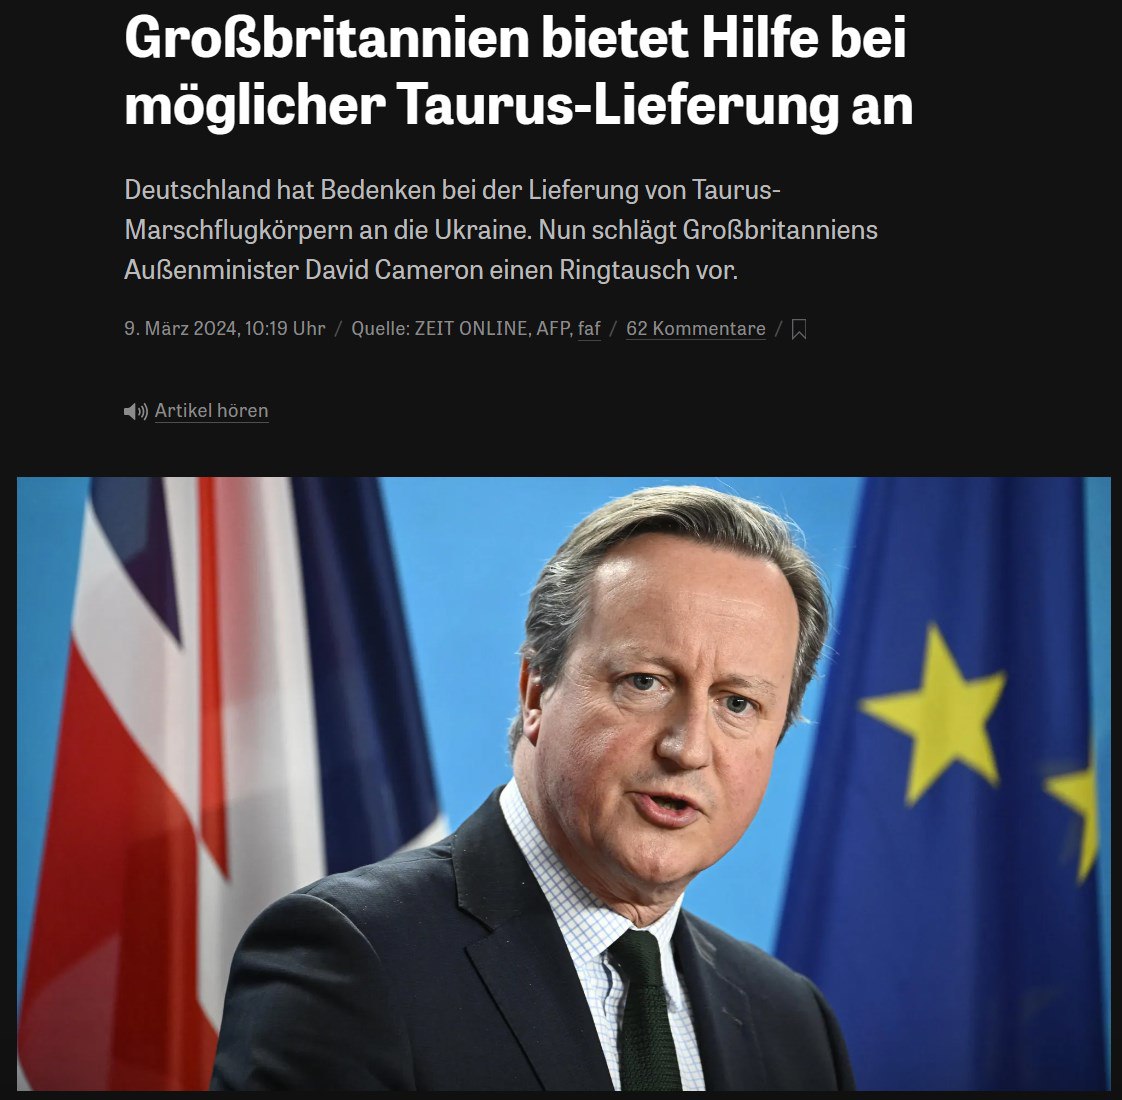 Снимок заголовка в Süddeutsche Zeitung